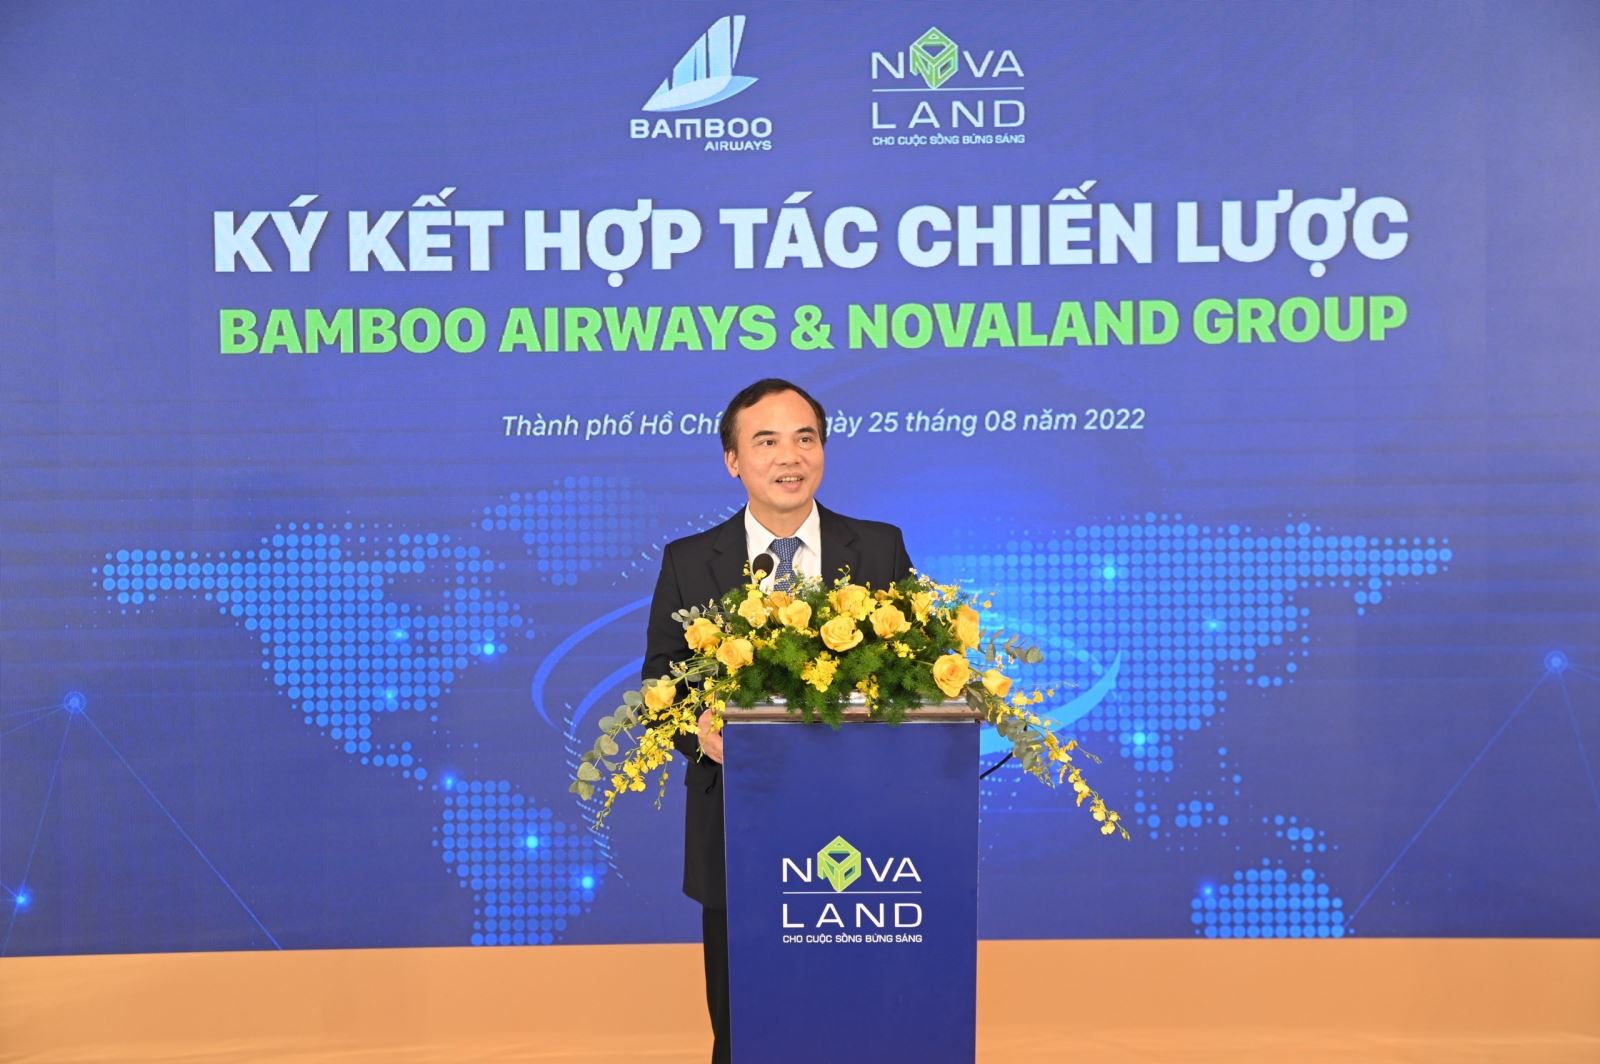 Ông Nguyễn Mạnh Quân - Thành viên HĐQT, TGĐ Bamboo Airways chia sẻ về nội dung của buổi ký kết hợp tác chiến lược với Novaland